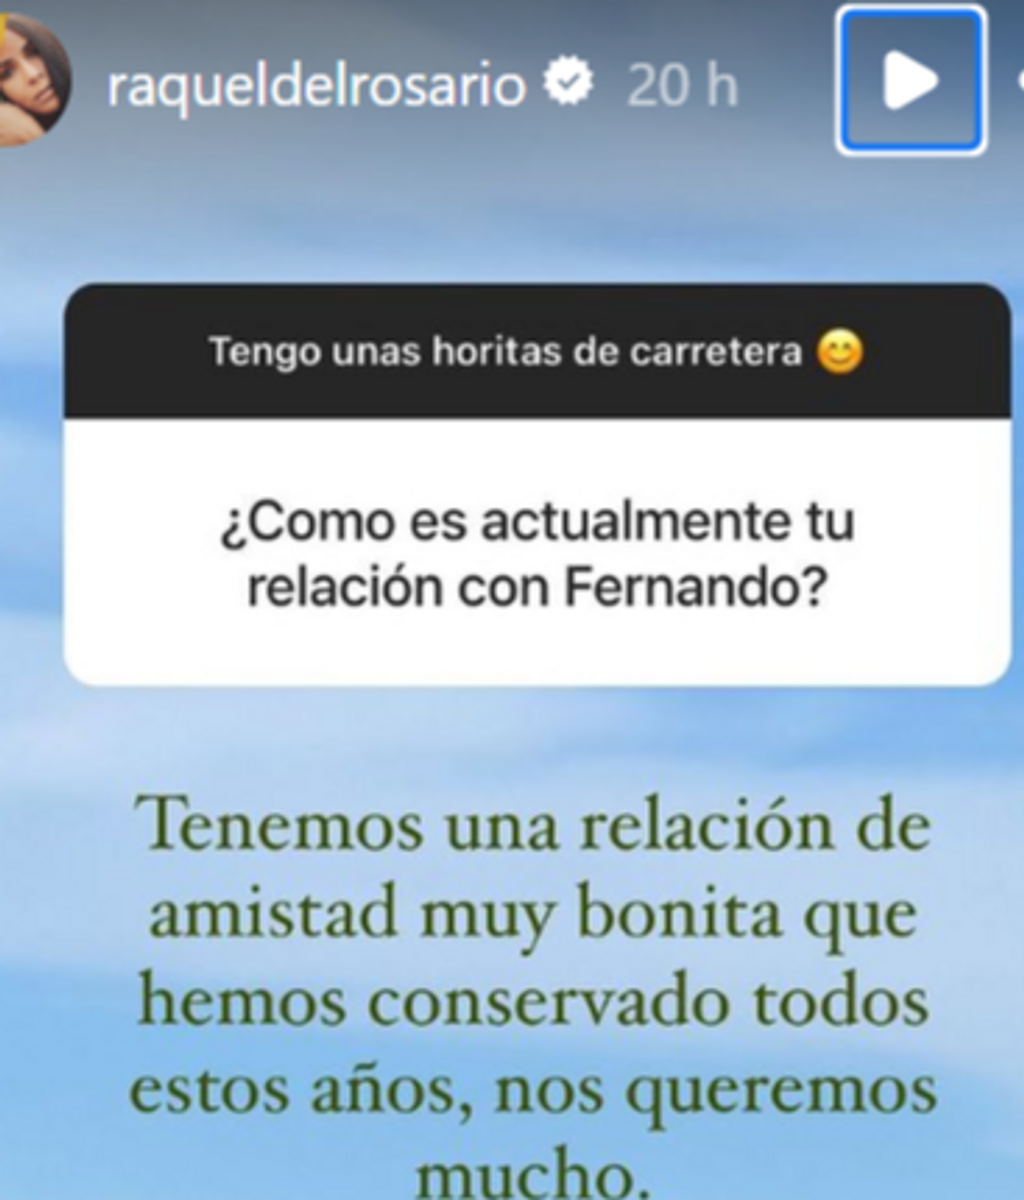 Raquel del Rosario a través de Instagram.